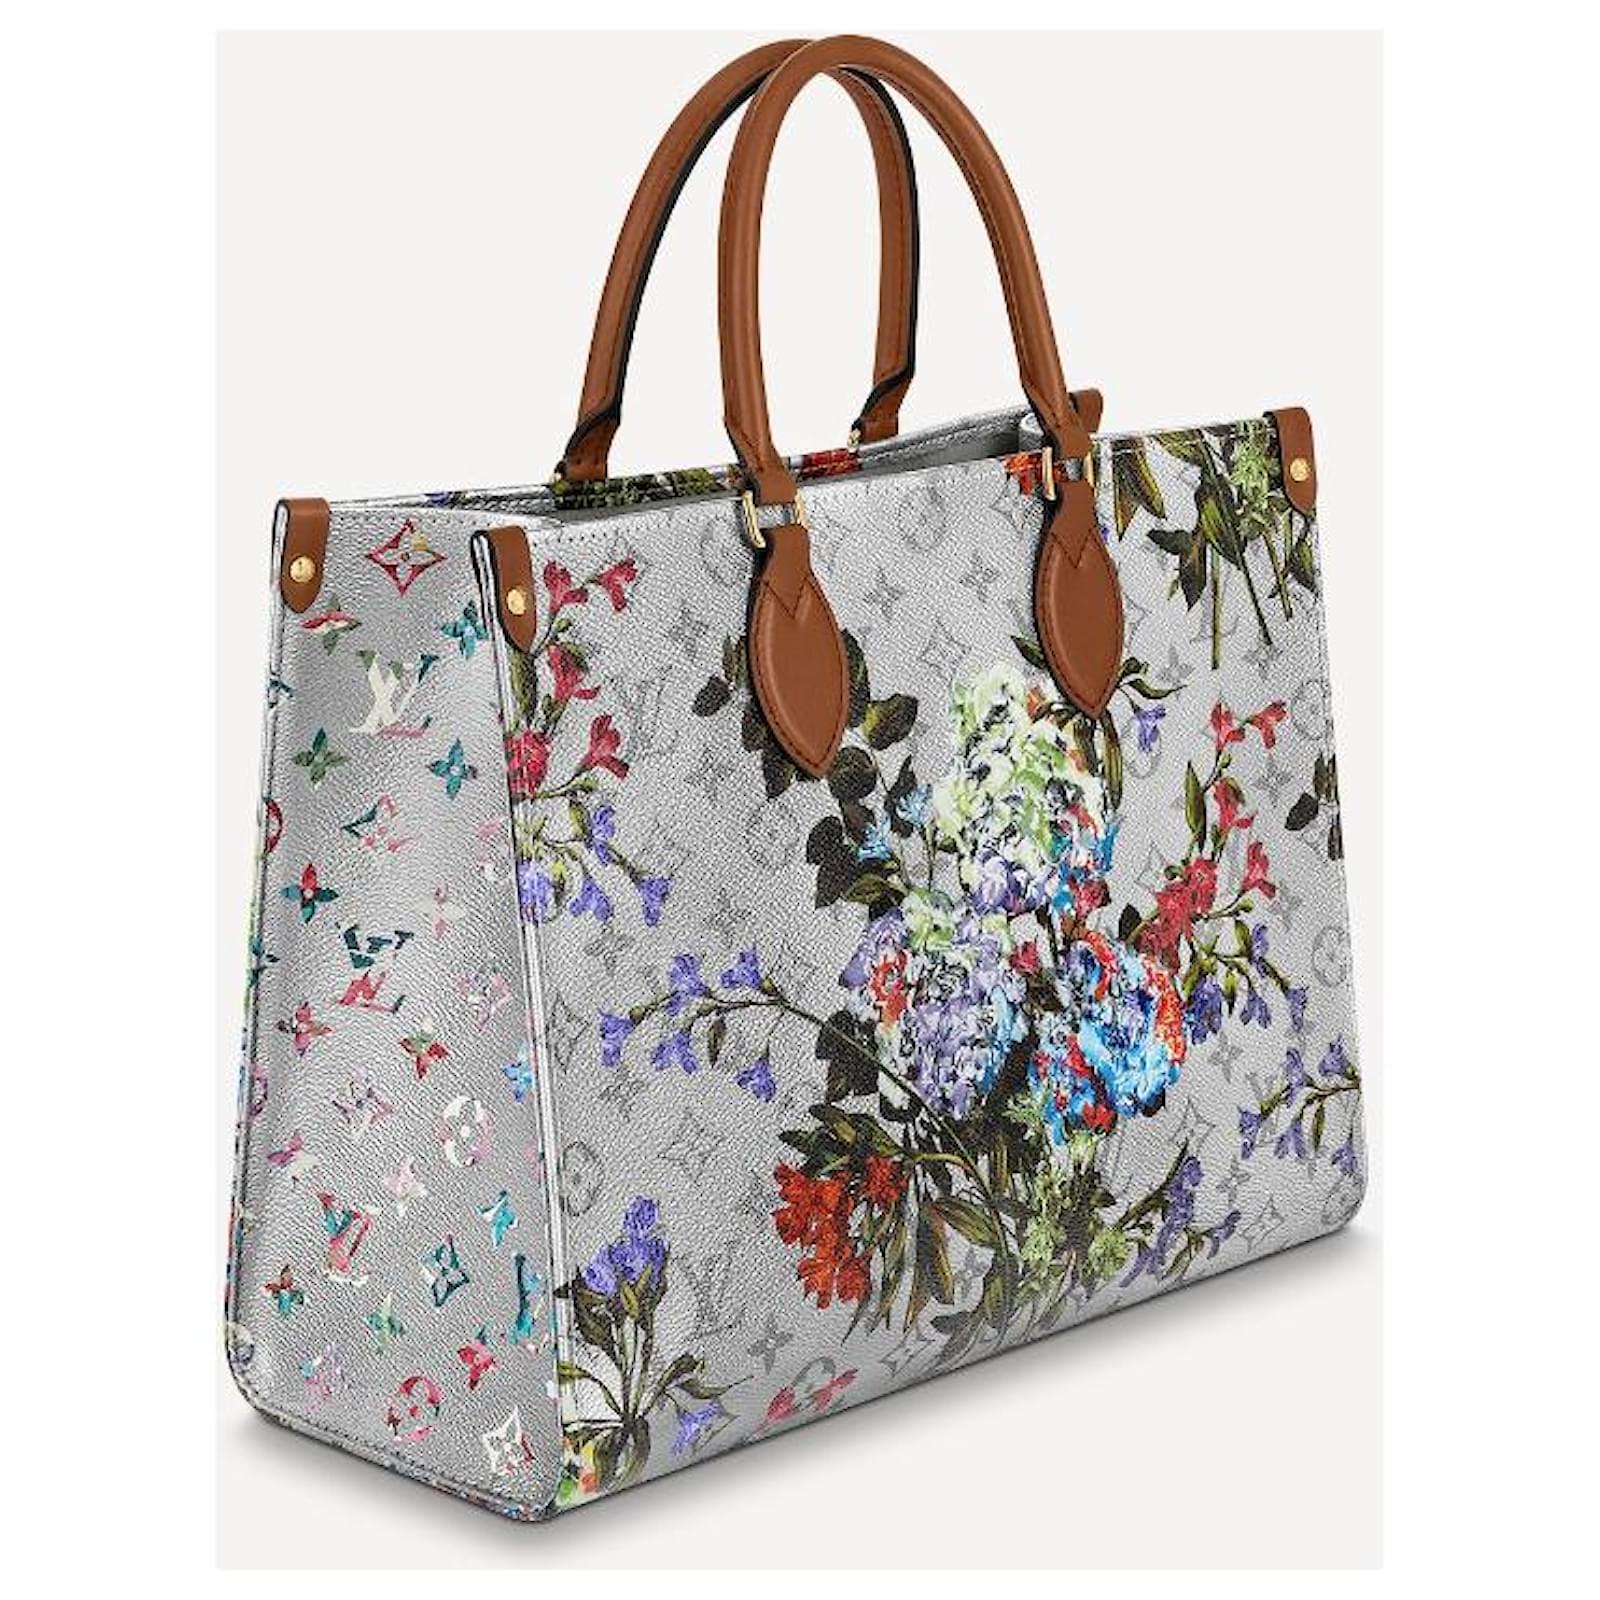 Bolso de mujer LV Louis Vuitton Top Handle Bag Set Box 7025 Croco bolsa de  cuero importación